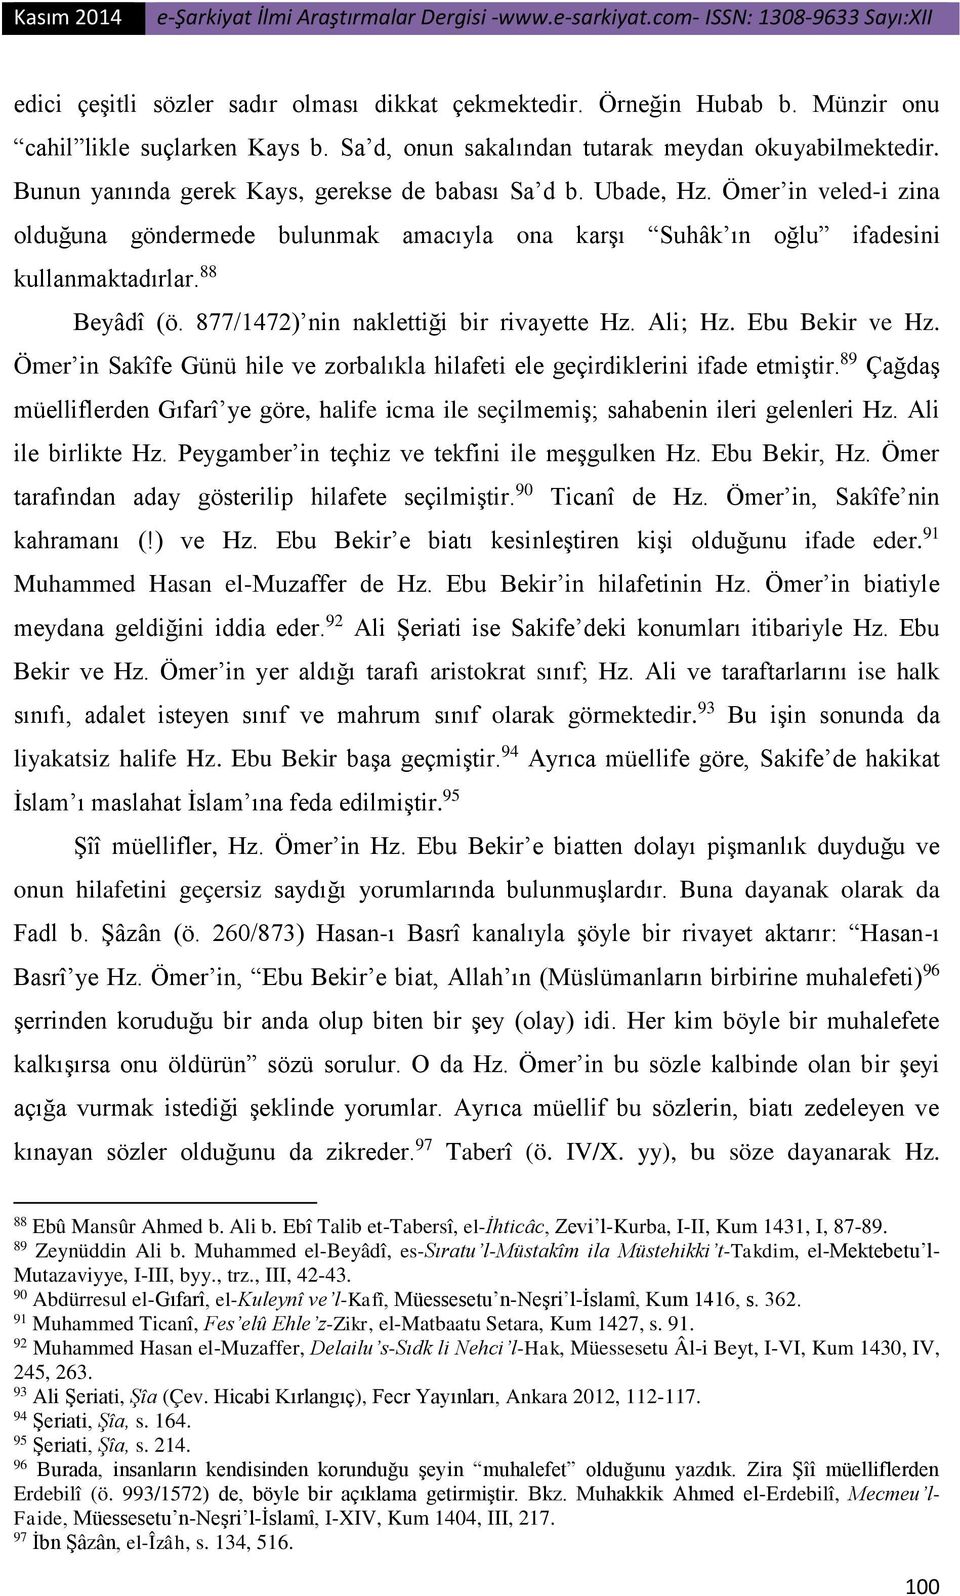 877/1472) nin naklettiği bir rivayette Hz. Ali; Hz. Ebu Bekir ve Hz. Ömer in Sakîfe Günü hile ve zorbalıkla hilafeti ele geçirdiklerini ifade etmiştir.